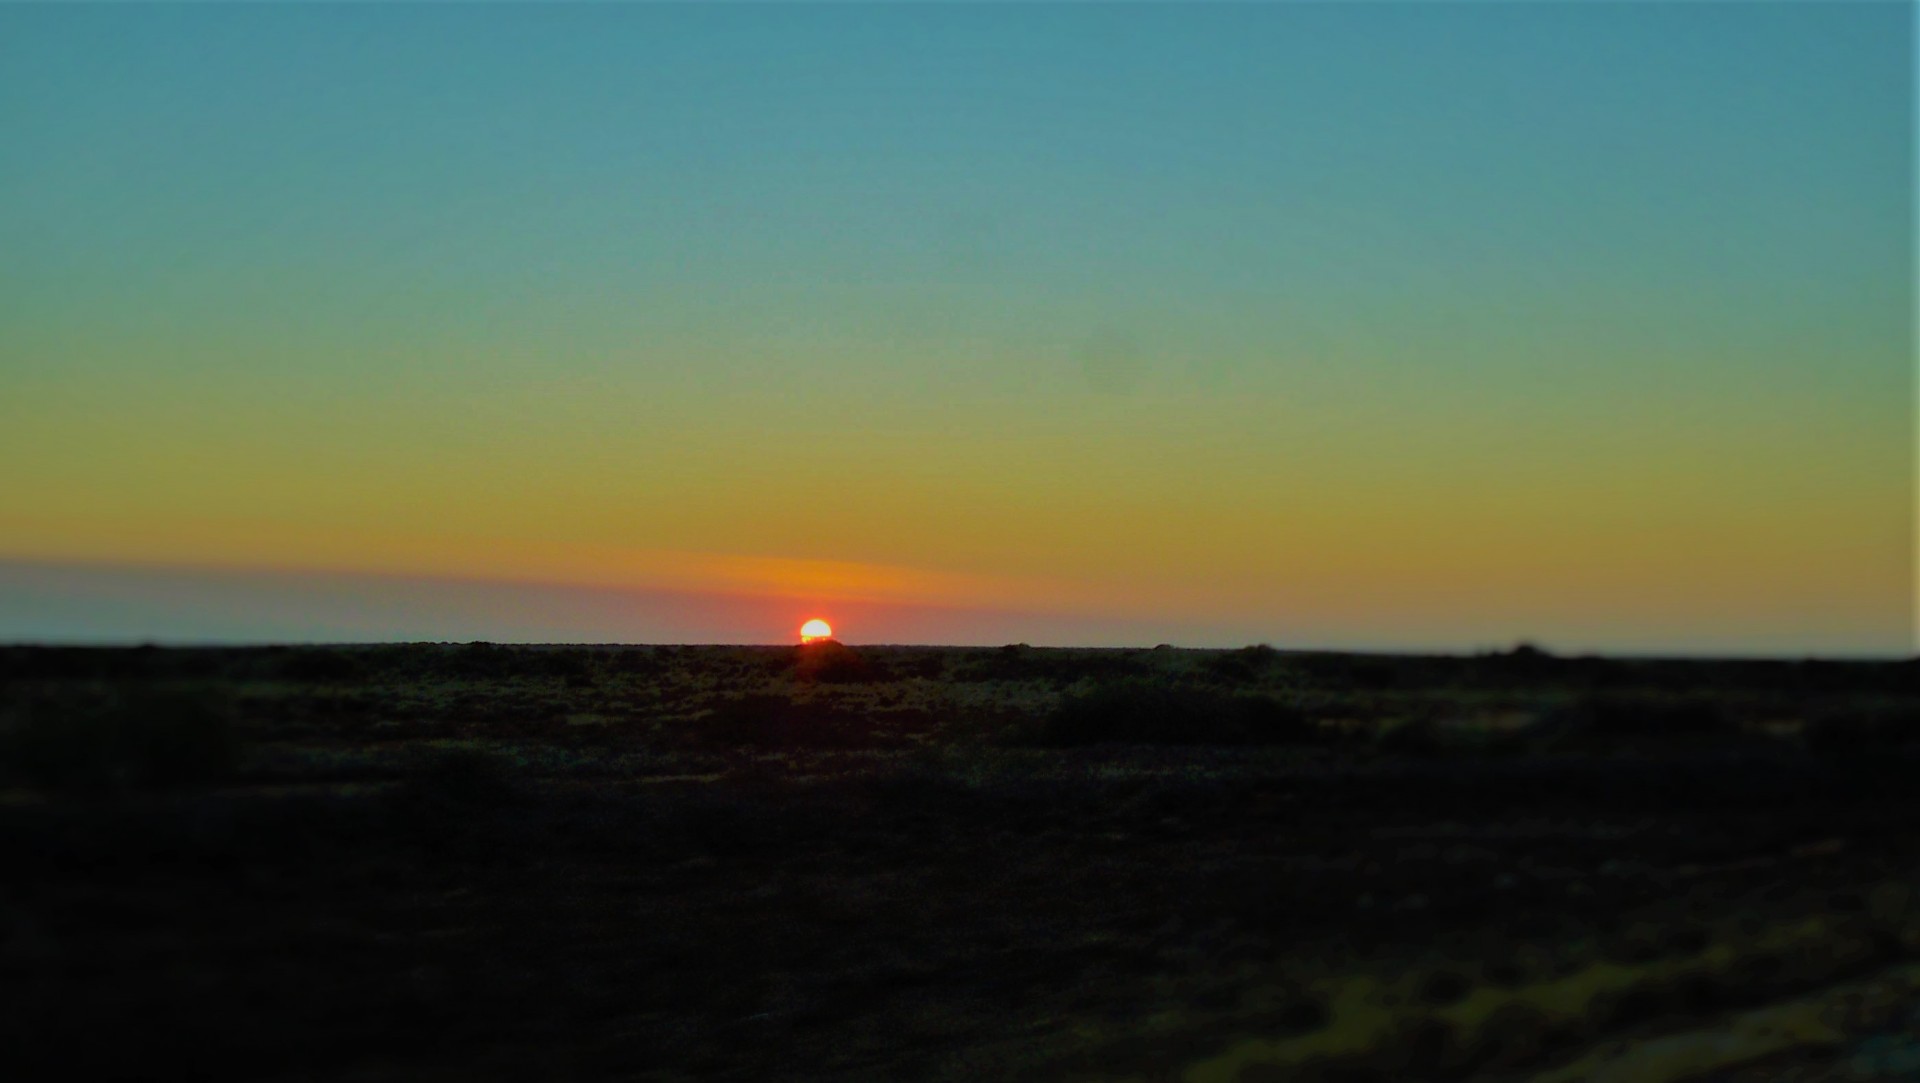 Sunrise over the eastern desert.